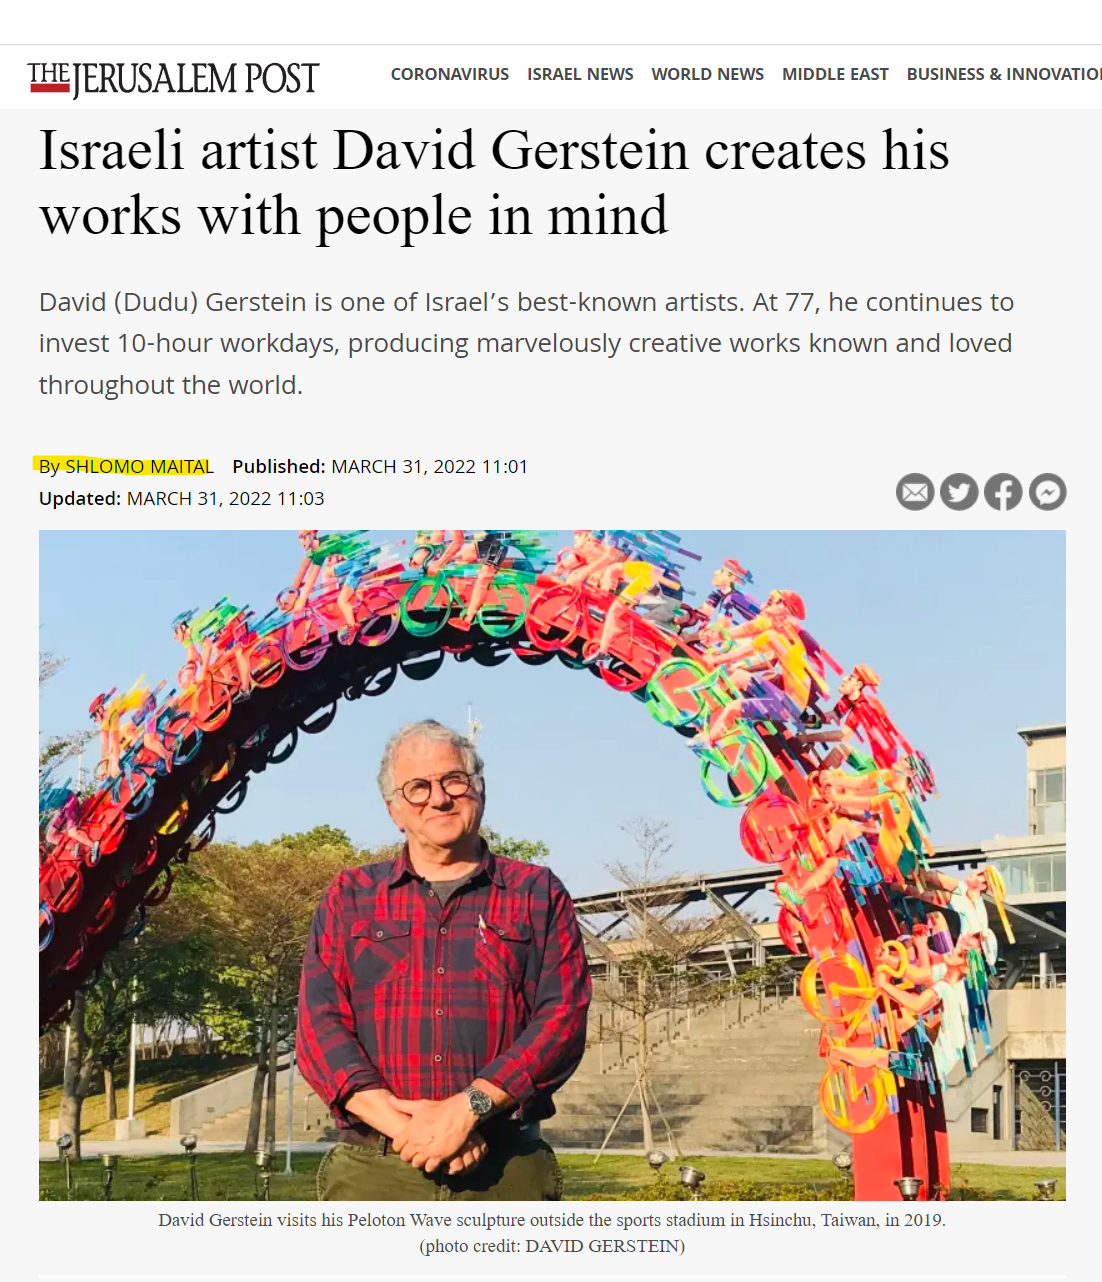 האמן הישראלי דוד גרשטיין יוצר את יצירותיו מתוך מחשבה על אנשים